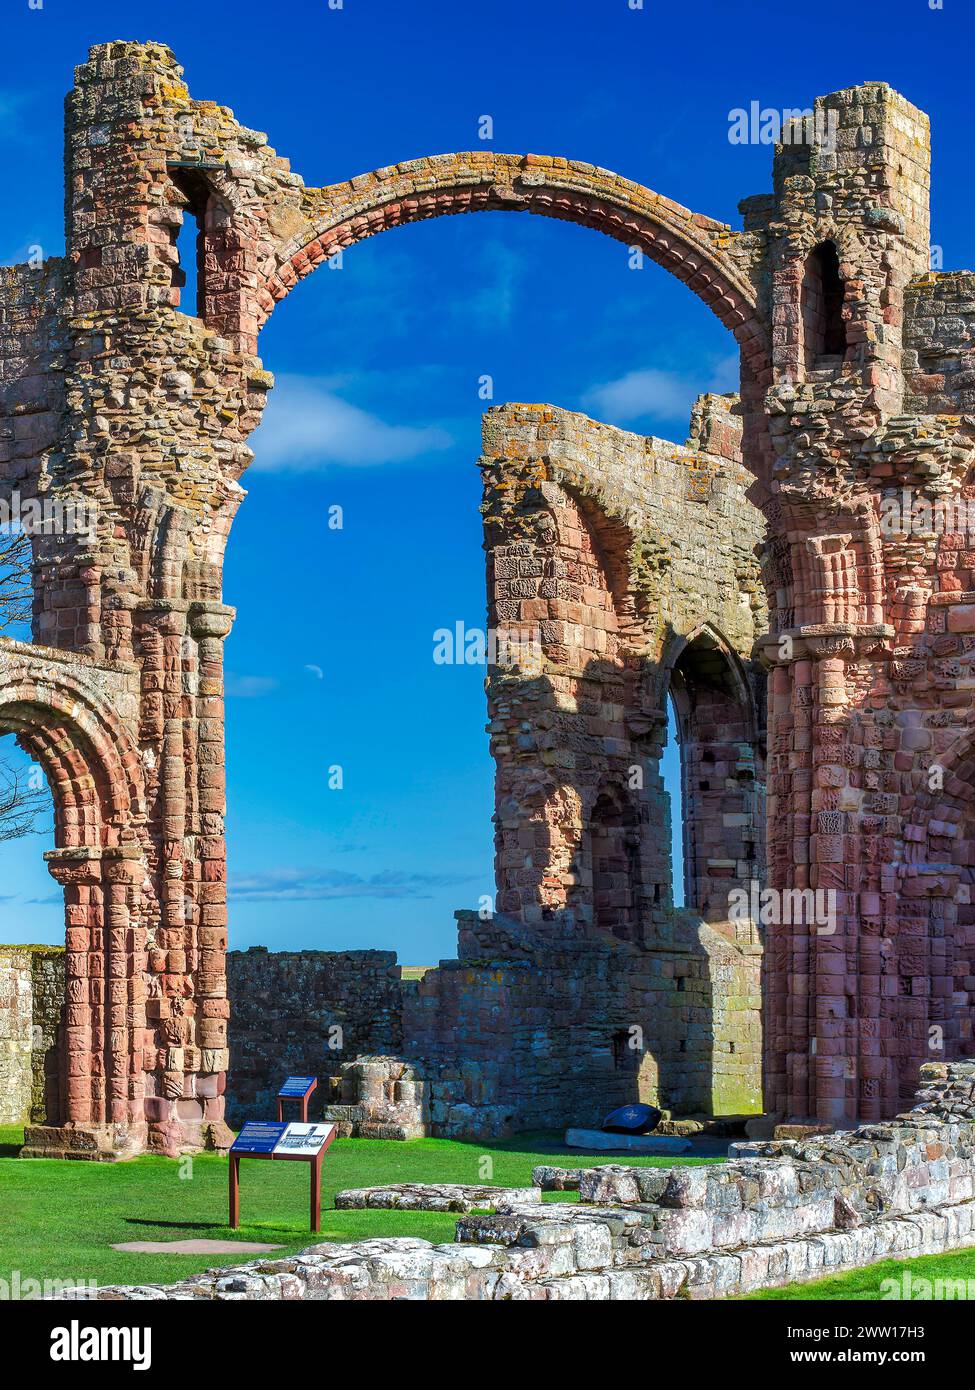 Une vue de jour sous le soleil du prieuré de Lindisfarne sur l'île Sainte de Lindisfarne dans le Northumberland, Angleterre, Royaume-Uni Banque D'Images